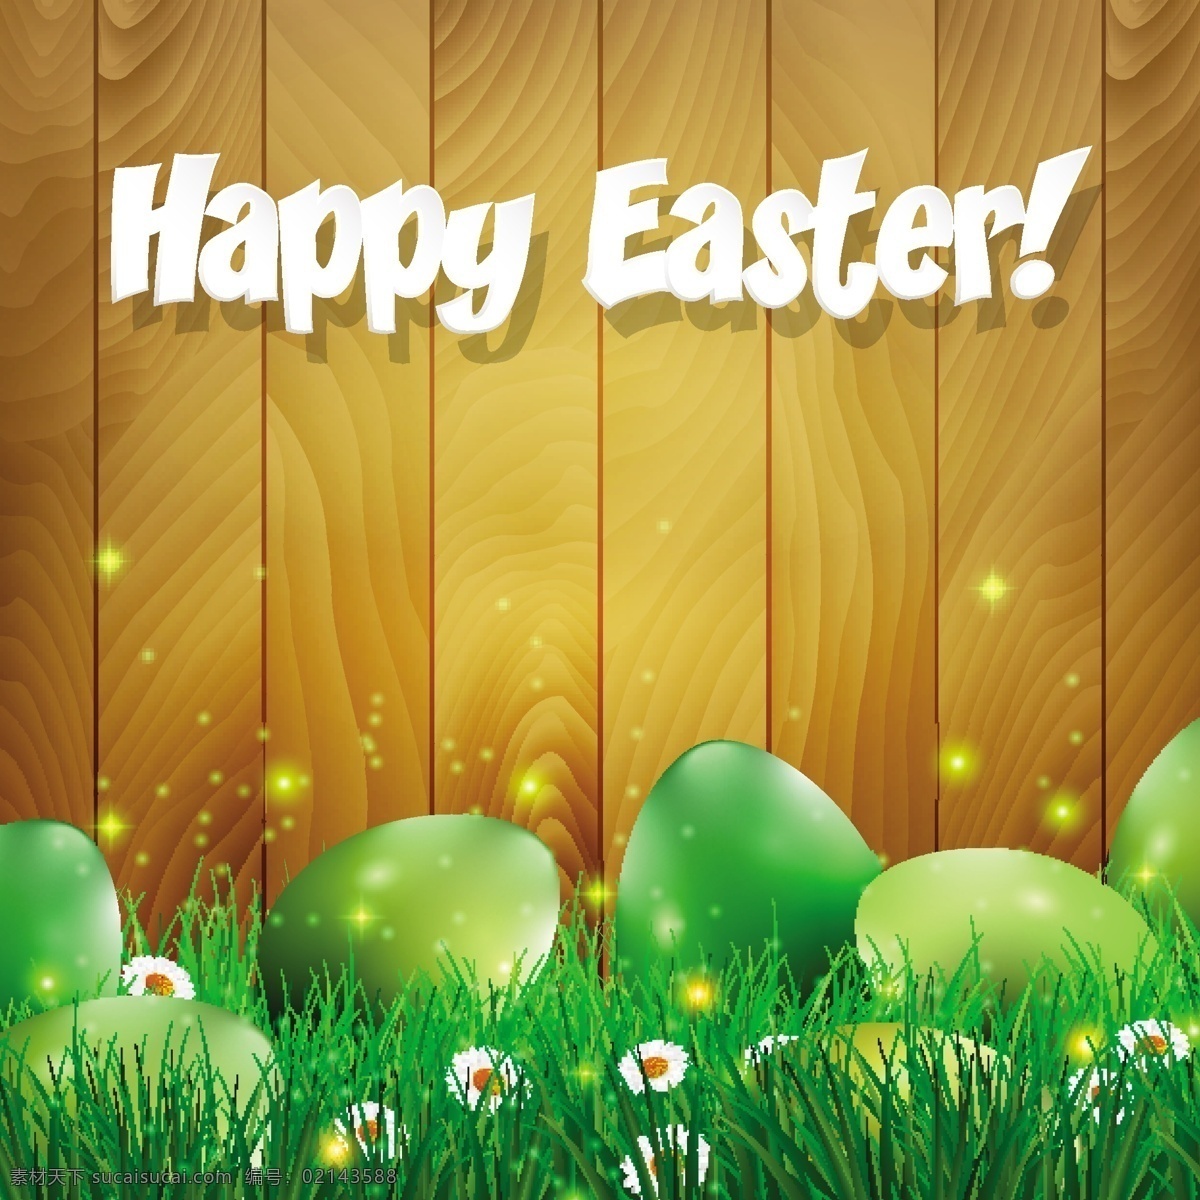 复活节图片 复活节 手绘 鸡蛋 彩蛋 兔子 卡通 节日素材 复活节背景